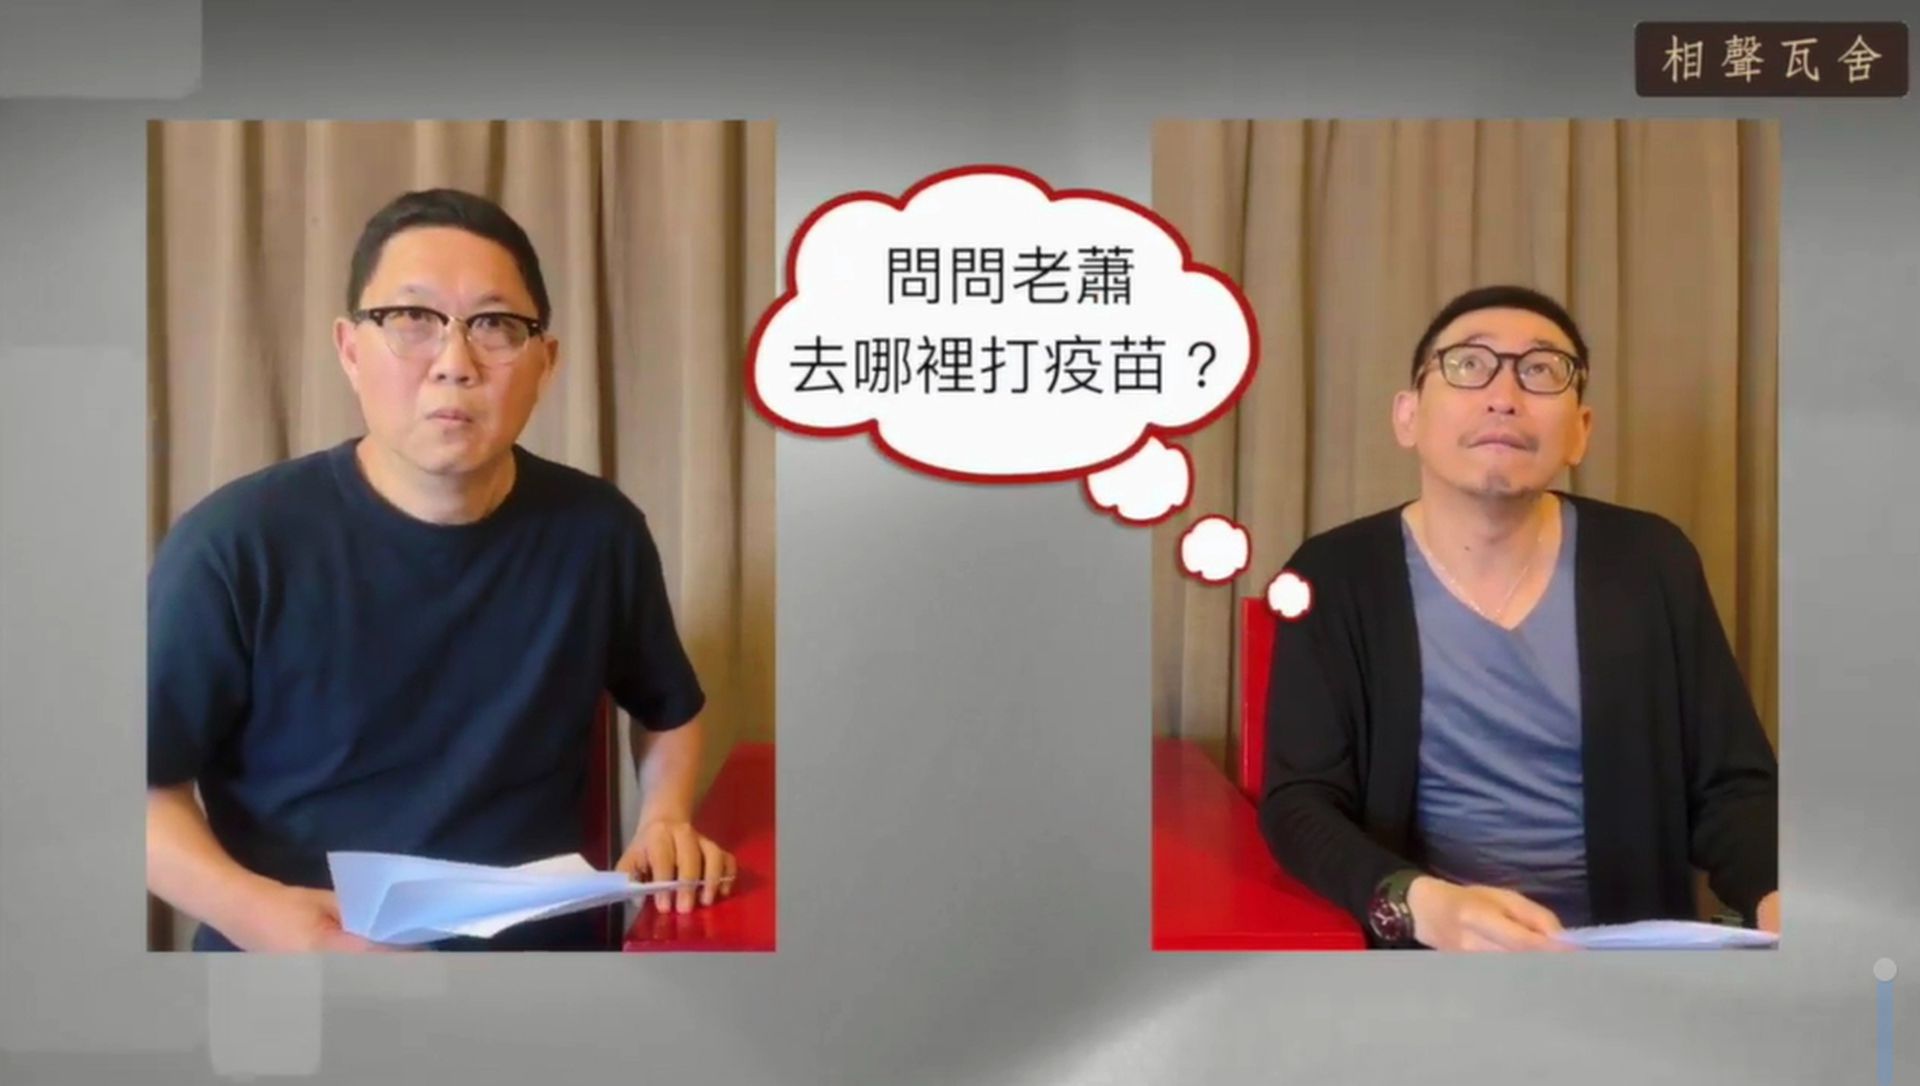 短片中也提到许多台湾人搭飞机打疫苗以及疫苗短缺的问题。（FB@相声瓦舍）